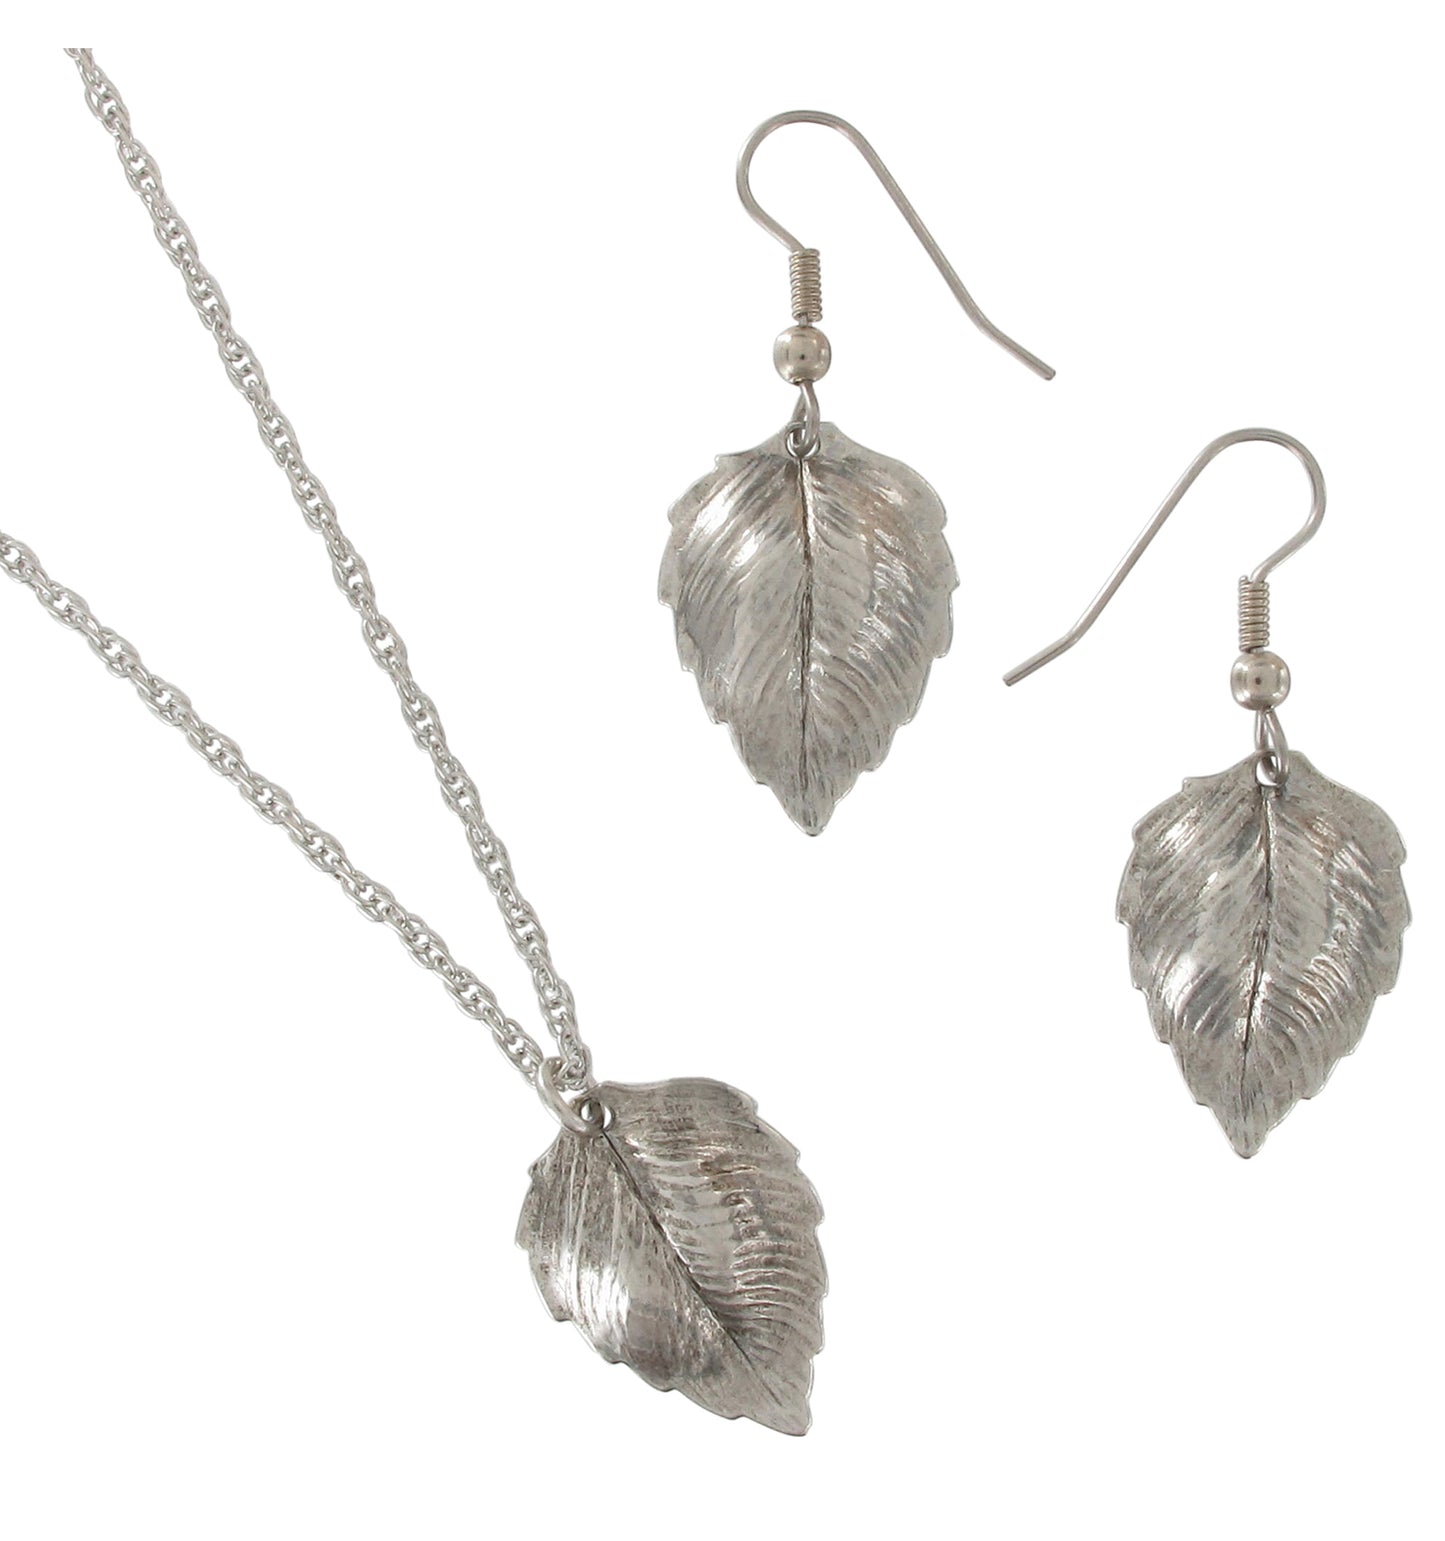 Ky & Co Silver Tone Leaf Dangle Pierced Earrings Pendant Necklace Jewelry Set